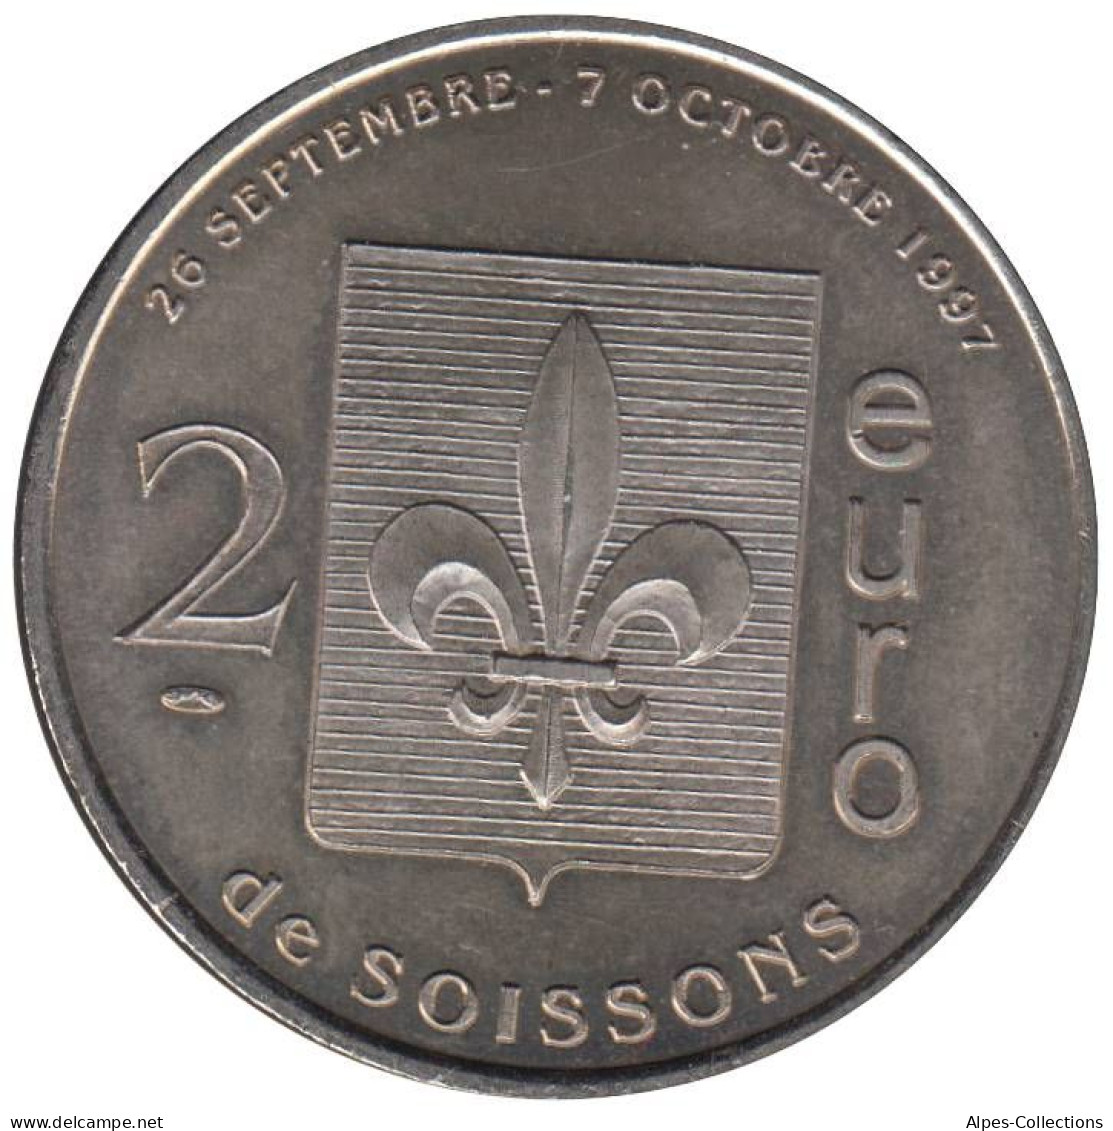 SOISSONS - EU0020.1 - 2 EURO DES VILLES - Réf: T392 - 1997 - Euros Des Villes